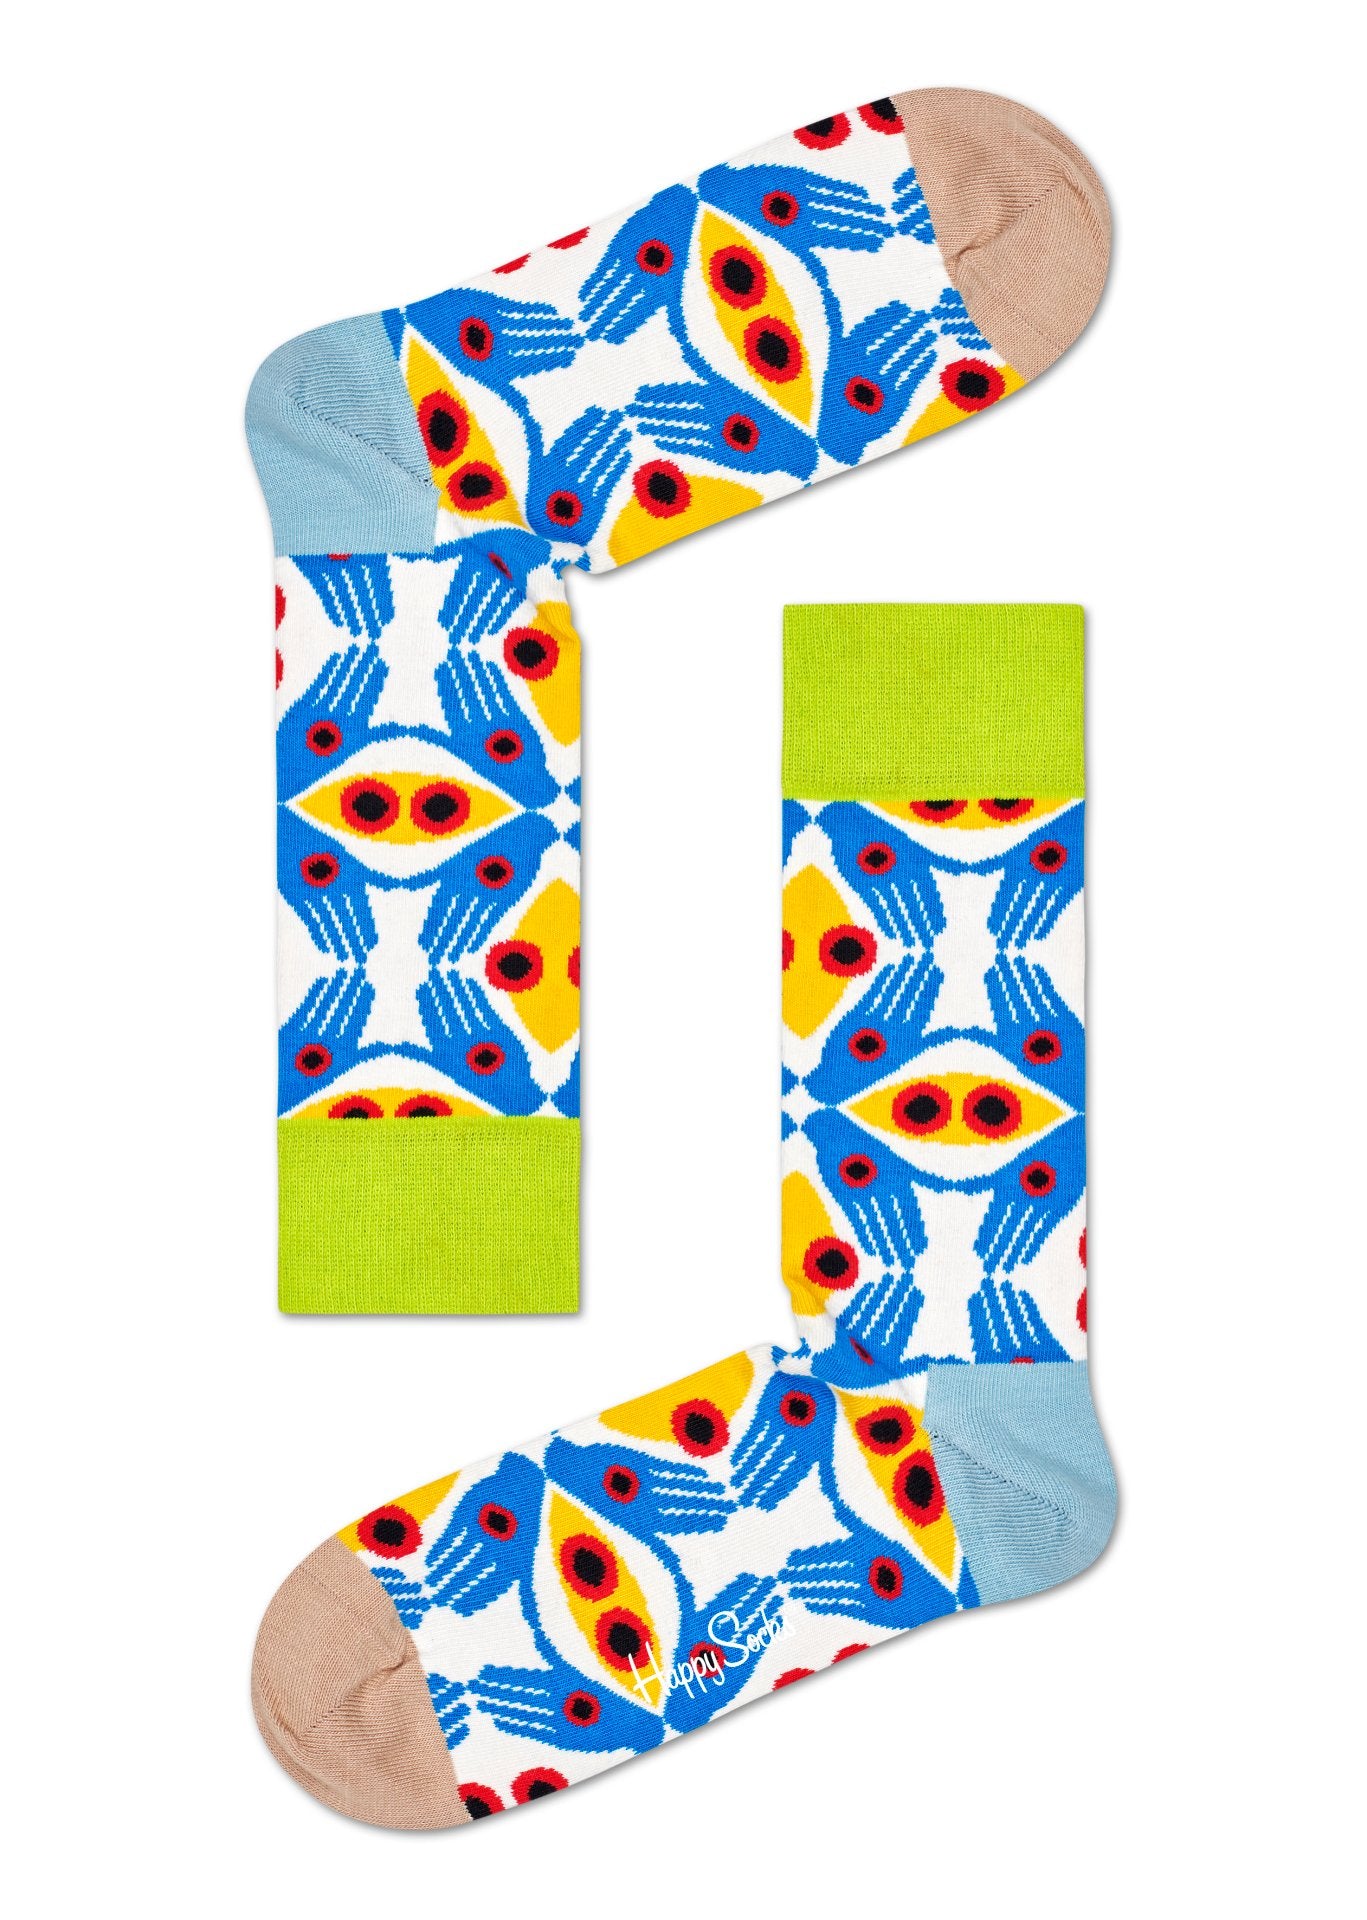 Modro-bílé ponožky Happy Socks, vzor Eyes And Hands